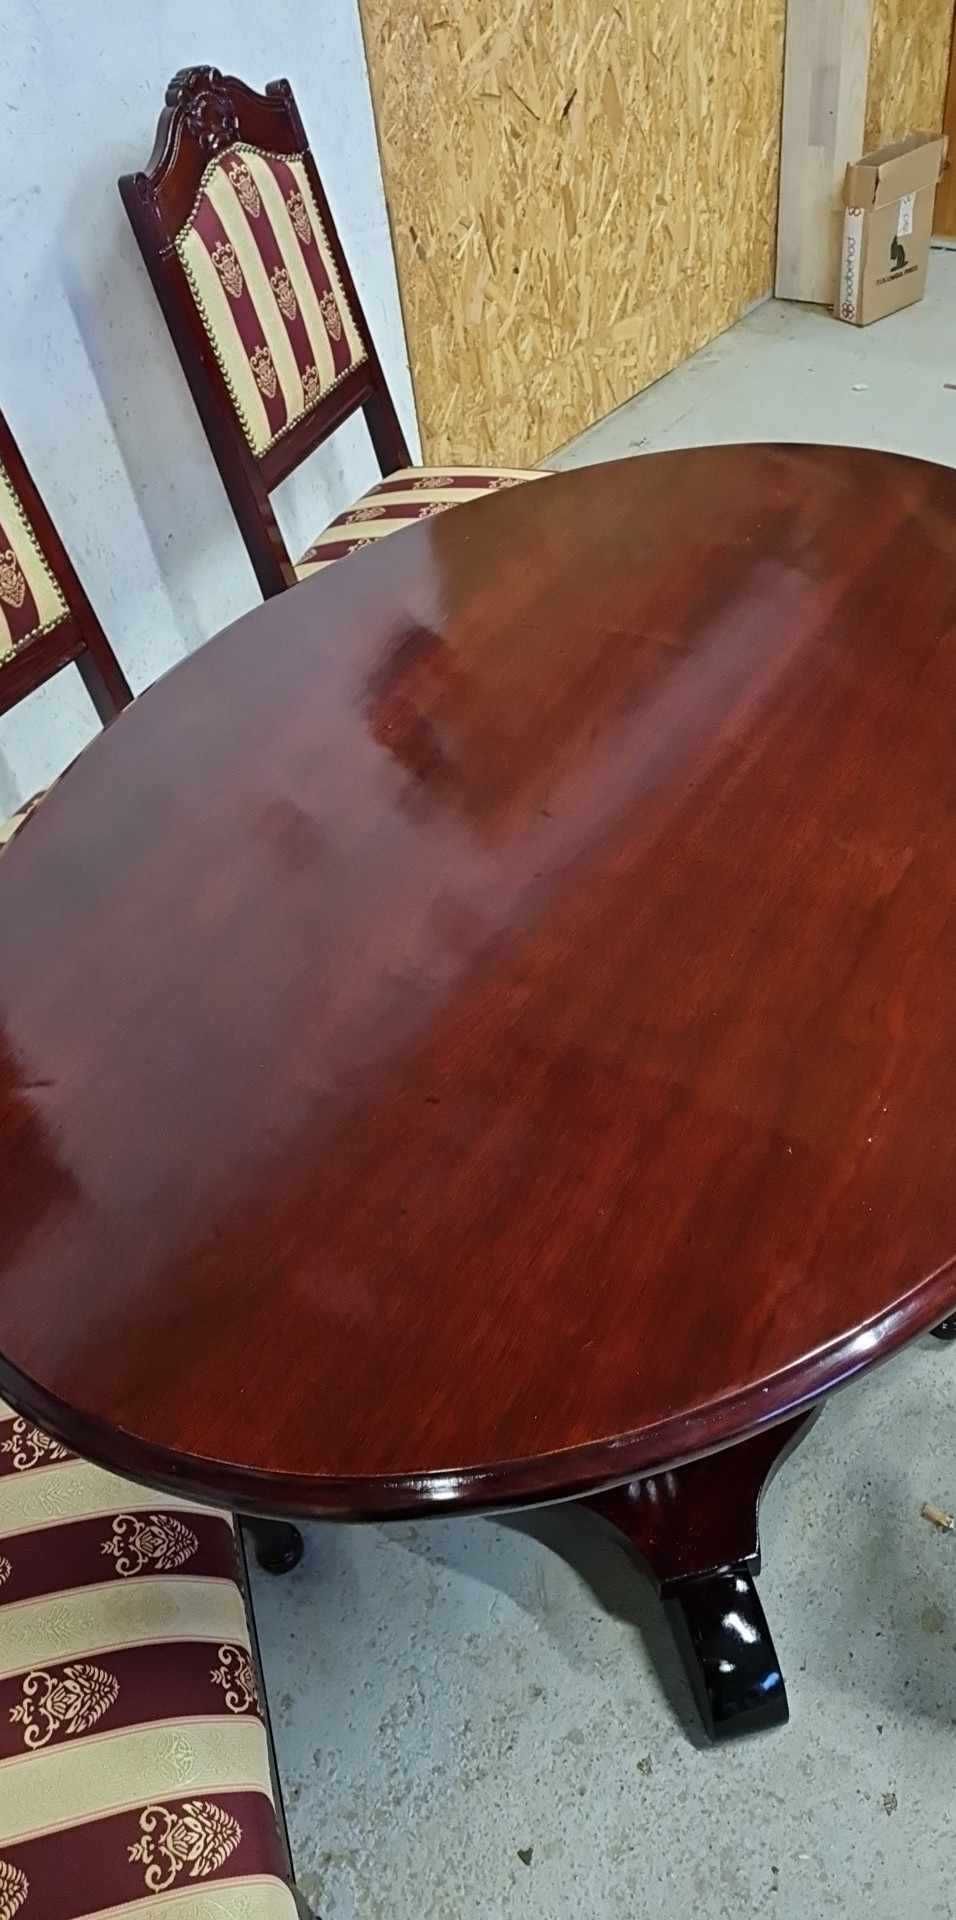 mahoniowy komplet - stół + 4 krzesła  - antyk - po renowacji